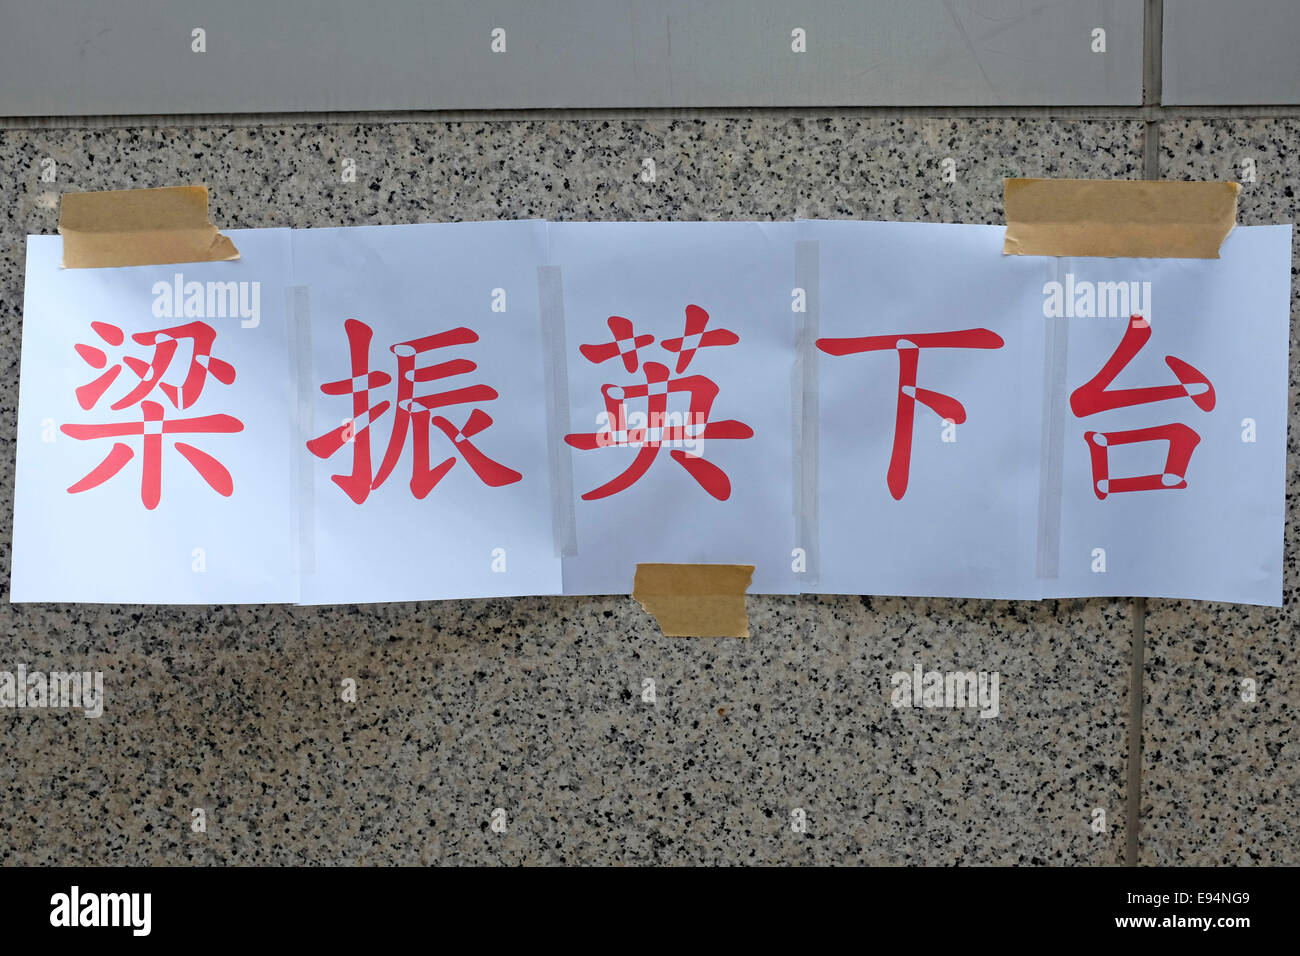 Sign calling for resignation of Hong Kong Chief Executive Chun-ying  Leung at Hong Kong protests Stock Photo